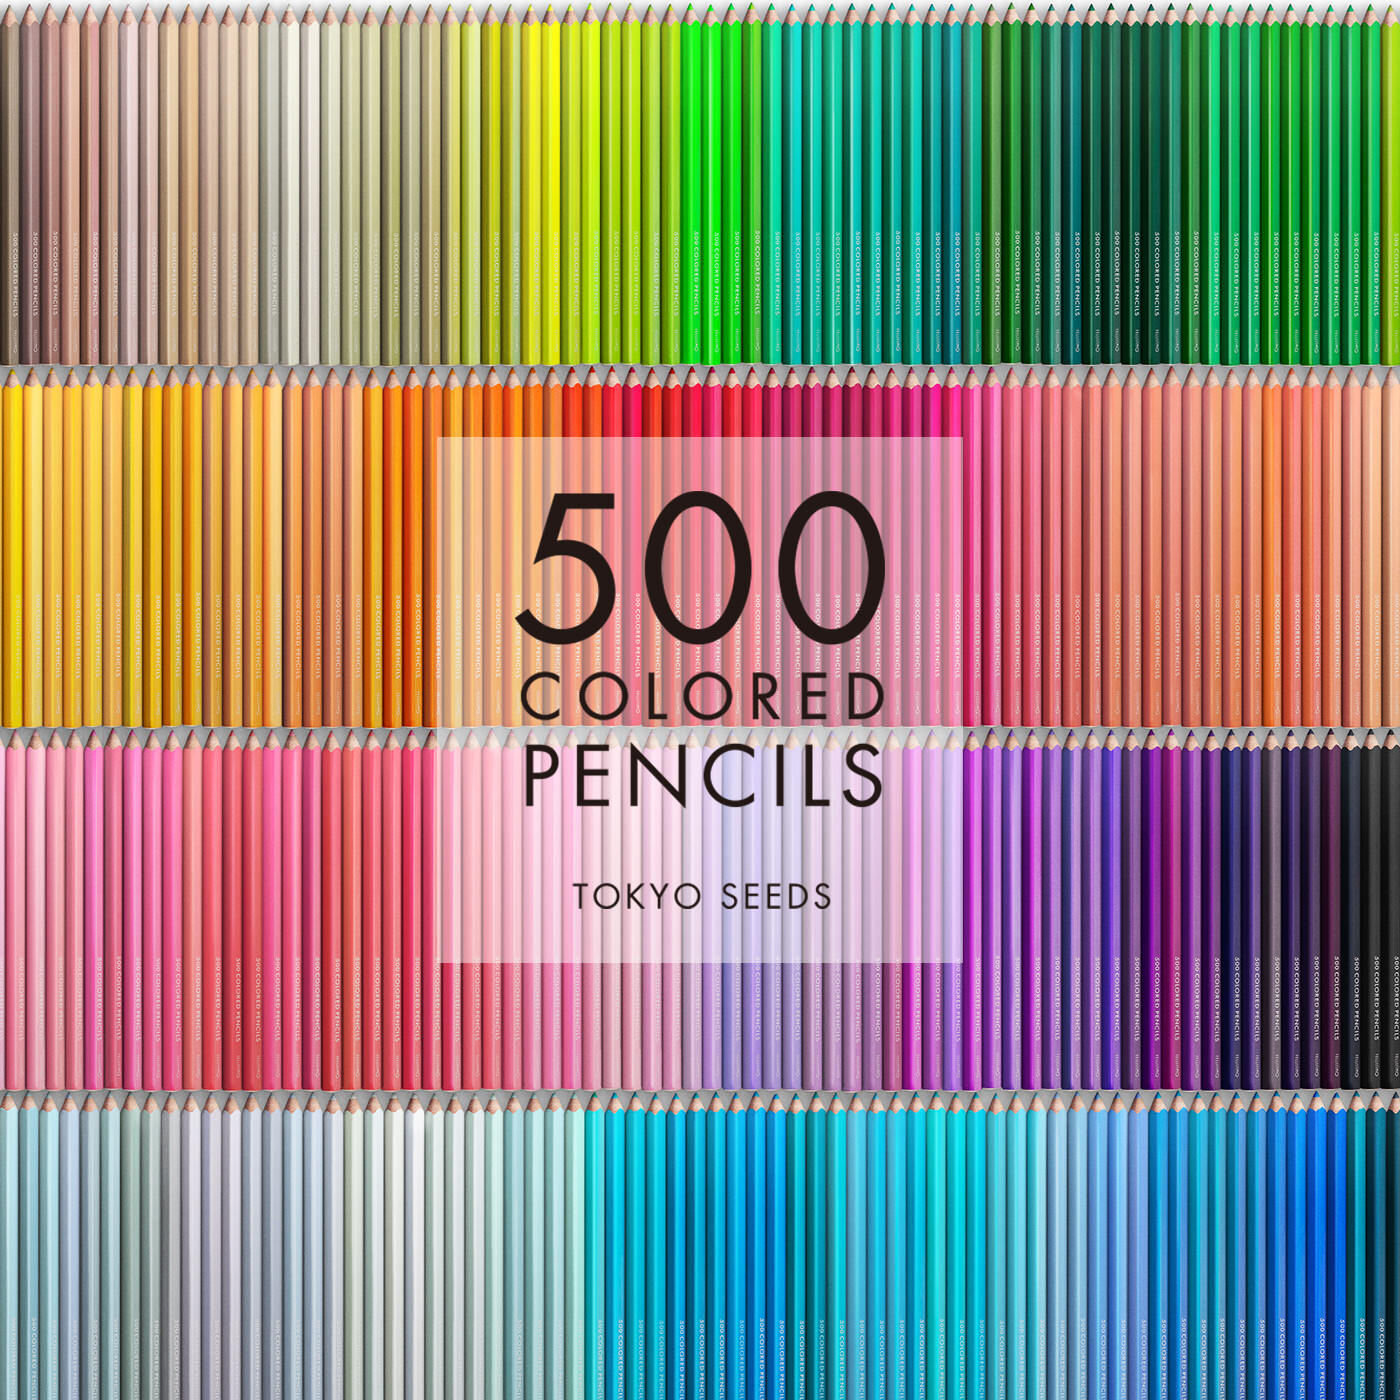 Real Stock|【439/500 BABY BOY】500色の色えんぴつ TOKYO SEEDS|1992年、世界初の「500色」という膨大な色数の色えんぴつが誕生して以来、その販売数は発売当初から合わせると、世界55ヵ国10万セット以上。今回、メイド・イン・ジャパンにこだわり、すべてが新しく生まれ変わって登場しました。